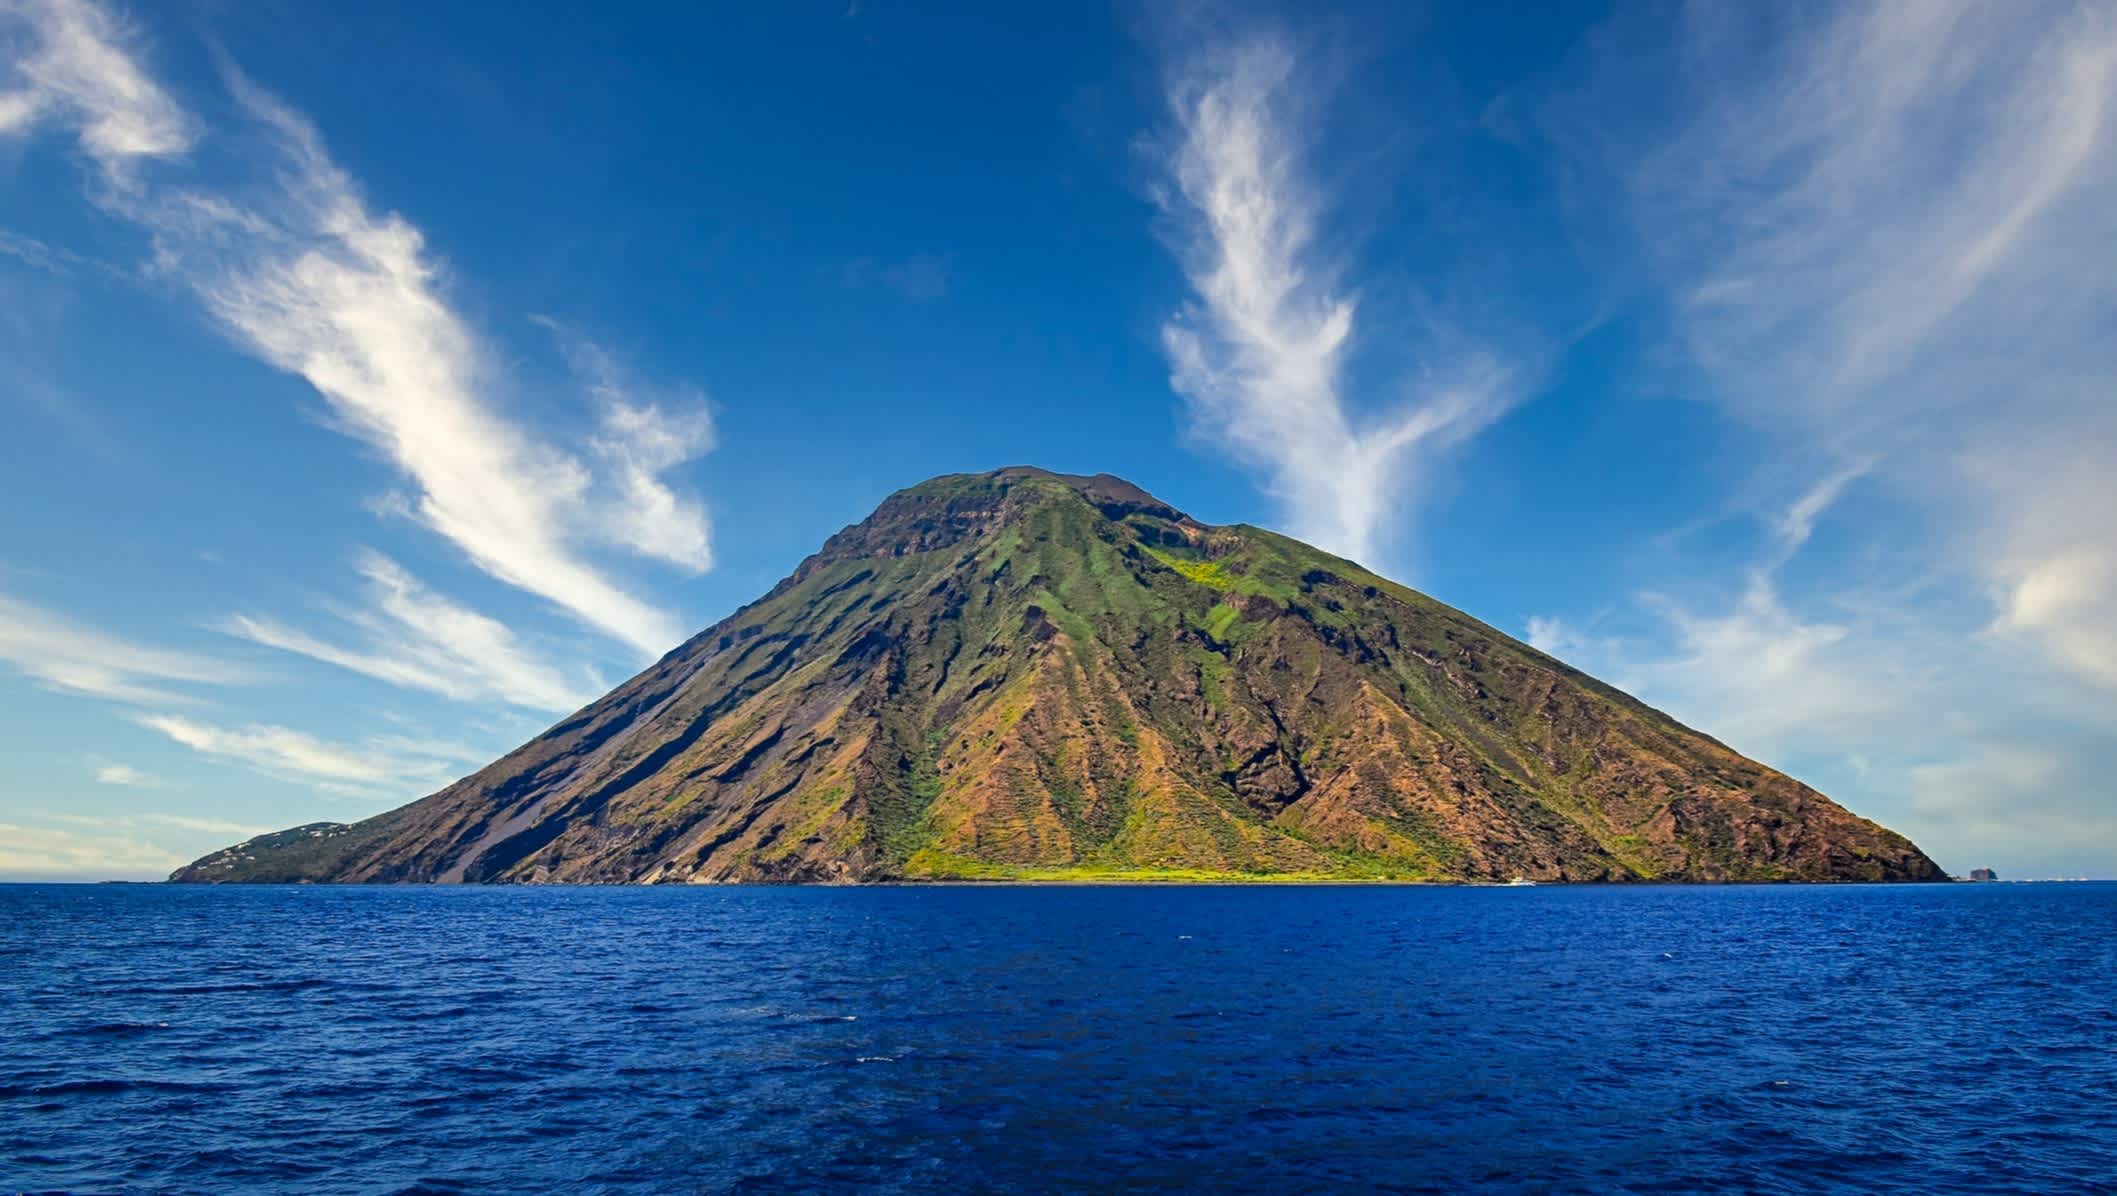 Vue de l'île volcanique de Stromboli depuis la mer, îles Éoliennes, Italie.